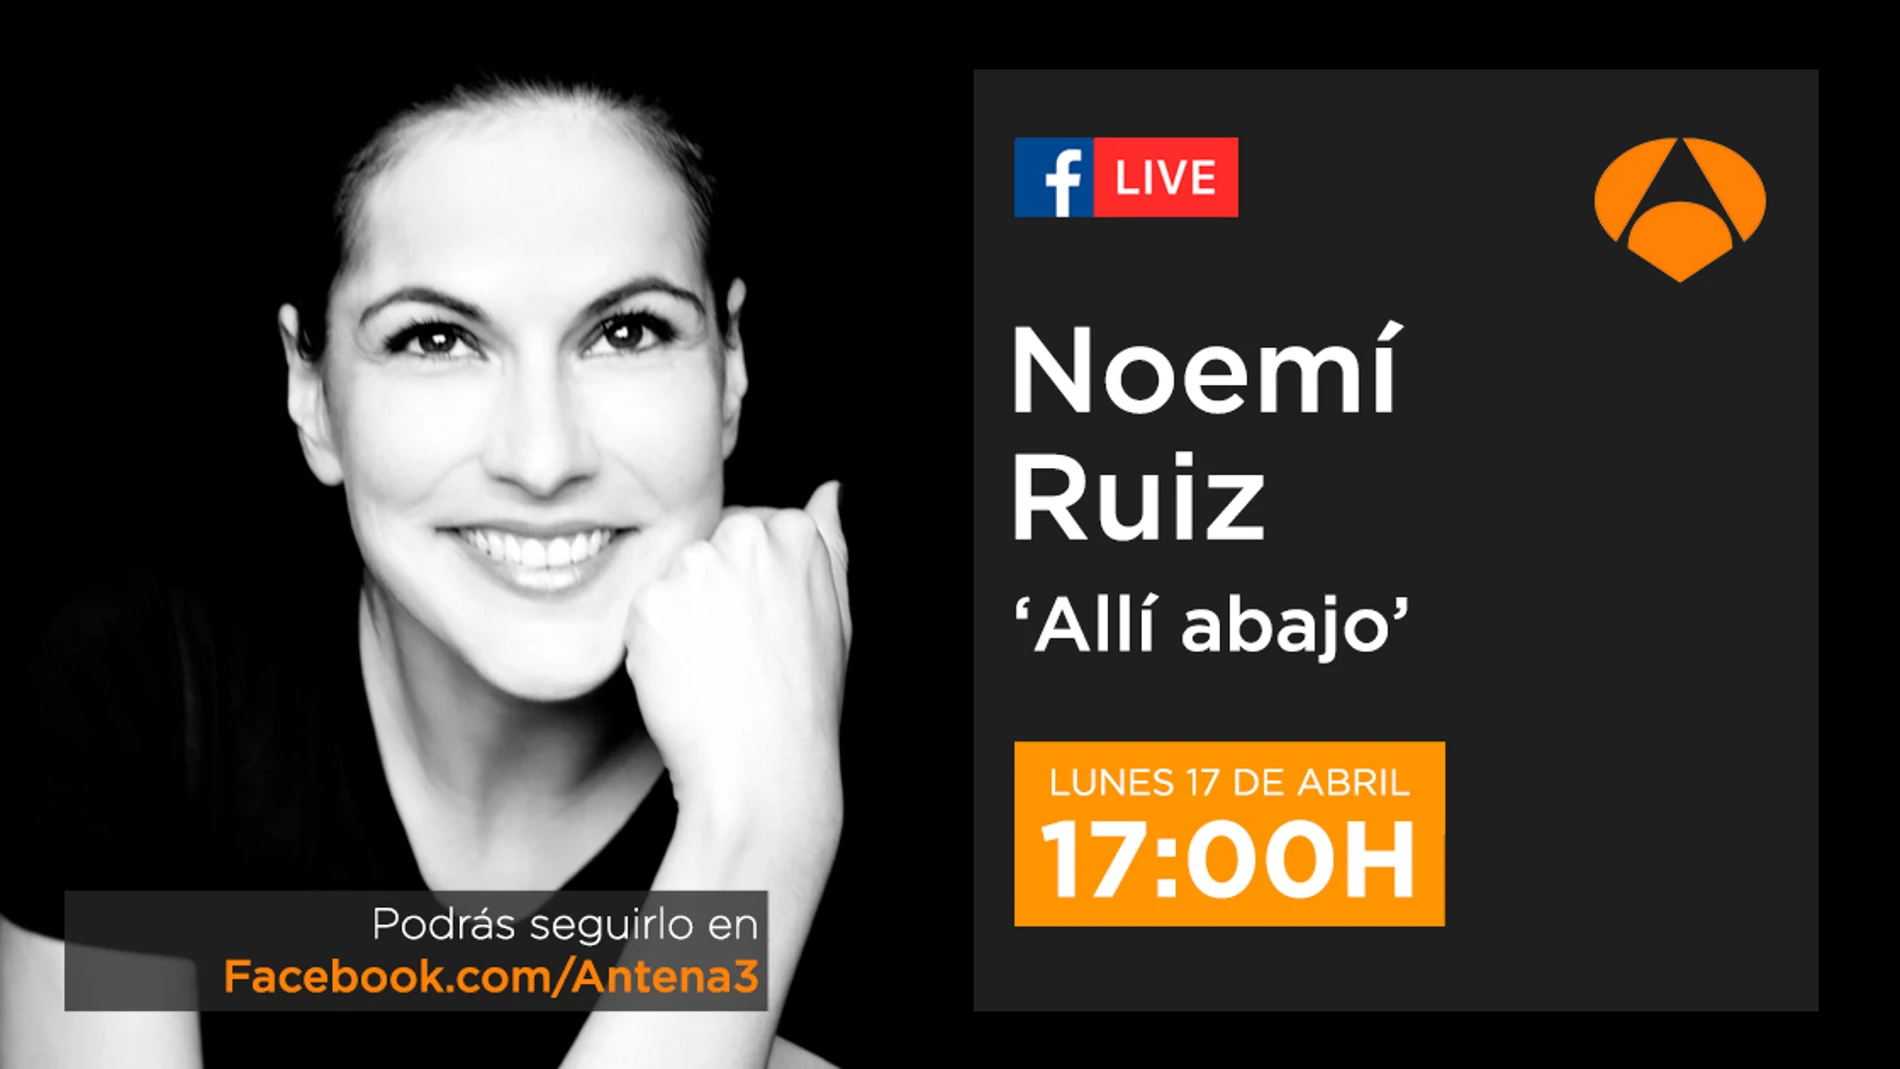 Noemí Ruiz estará en directo a través de Facebook Live el próximo lunes